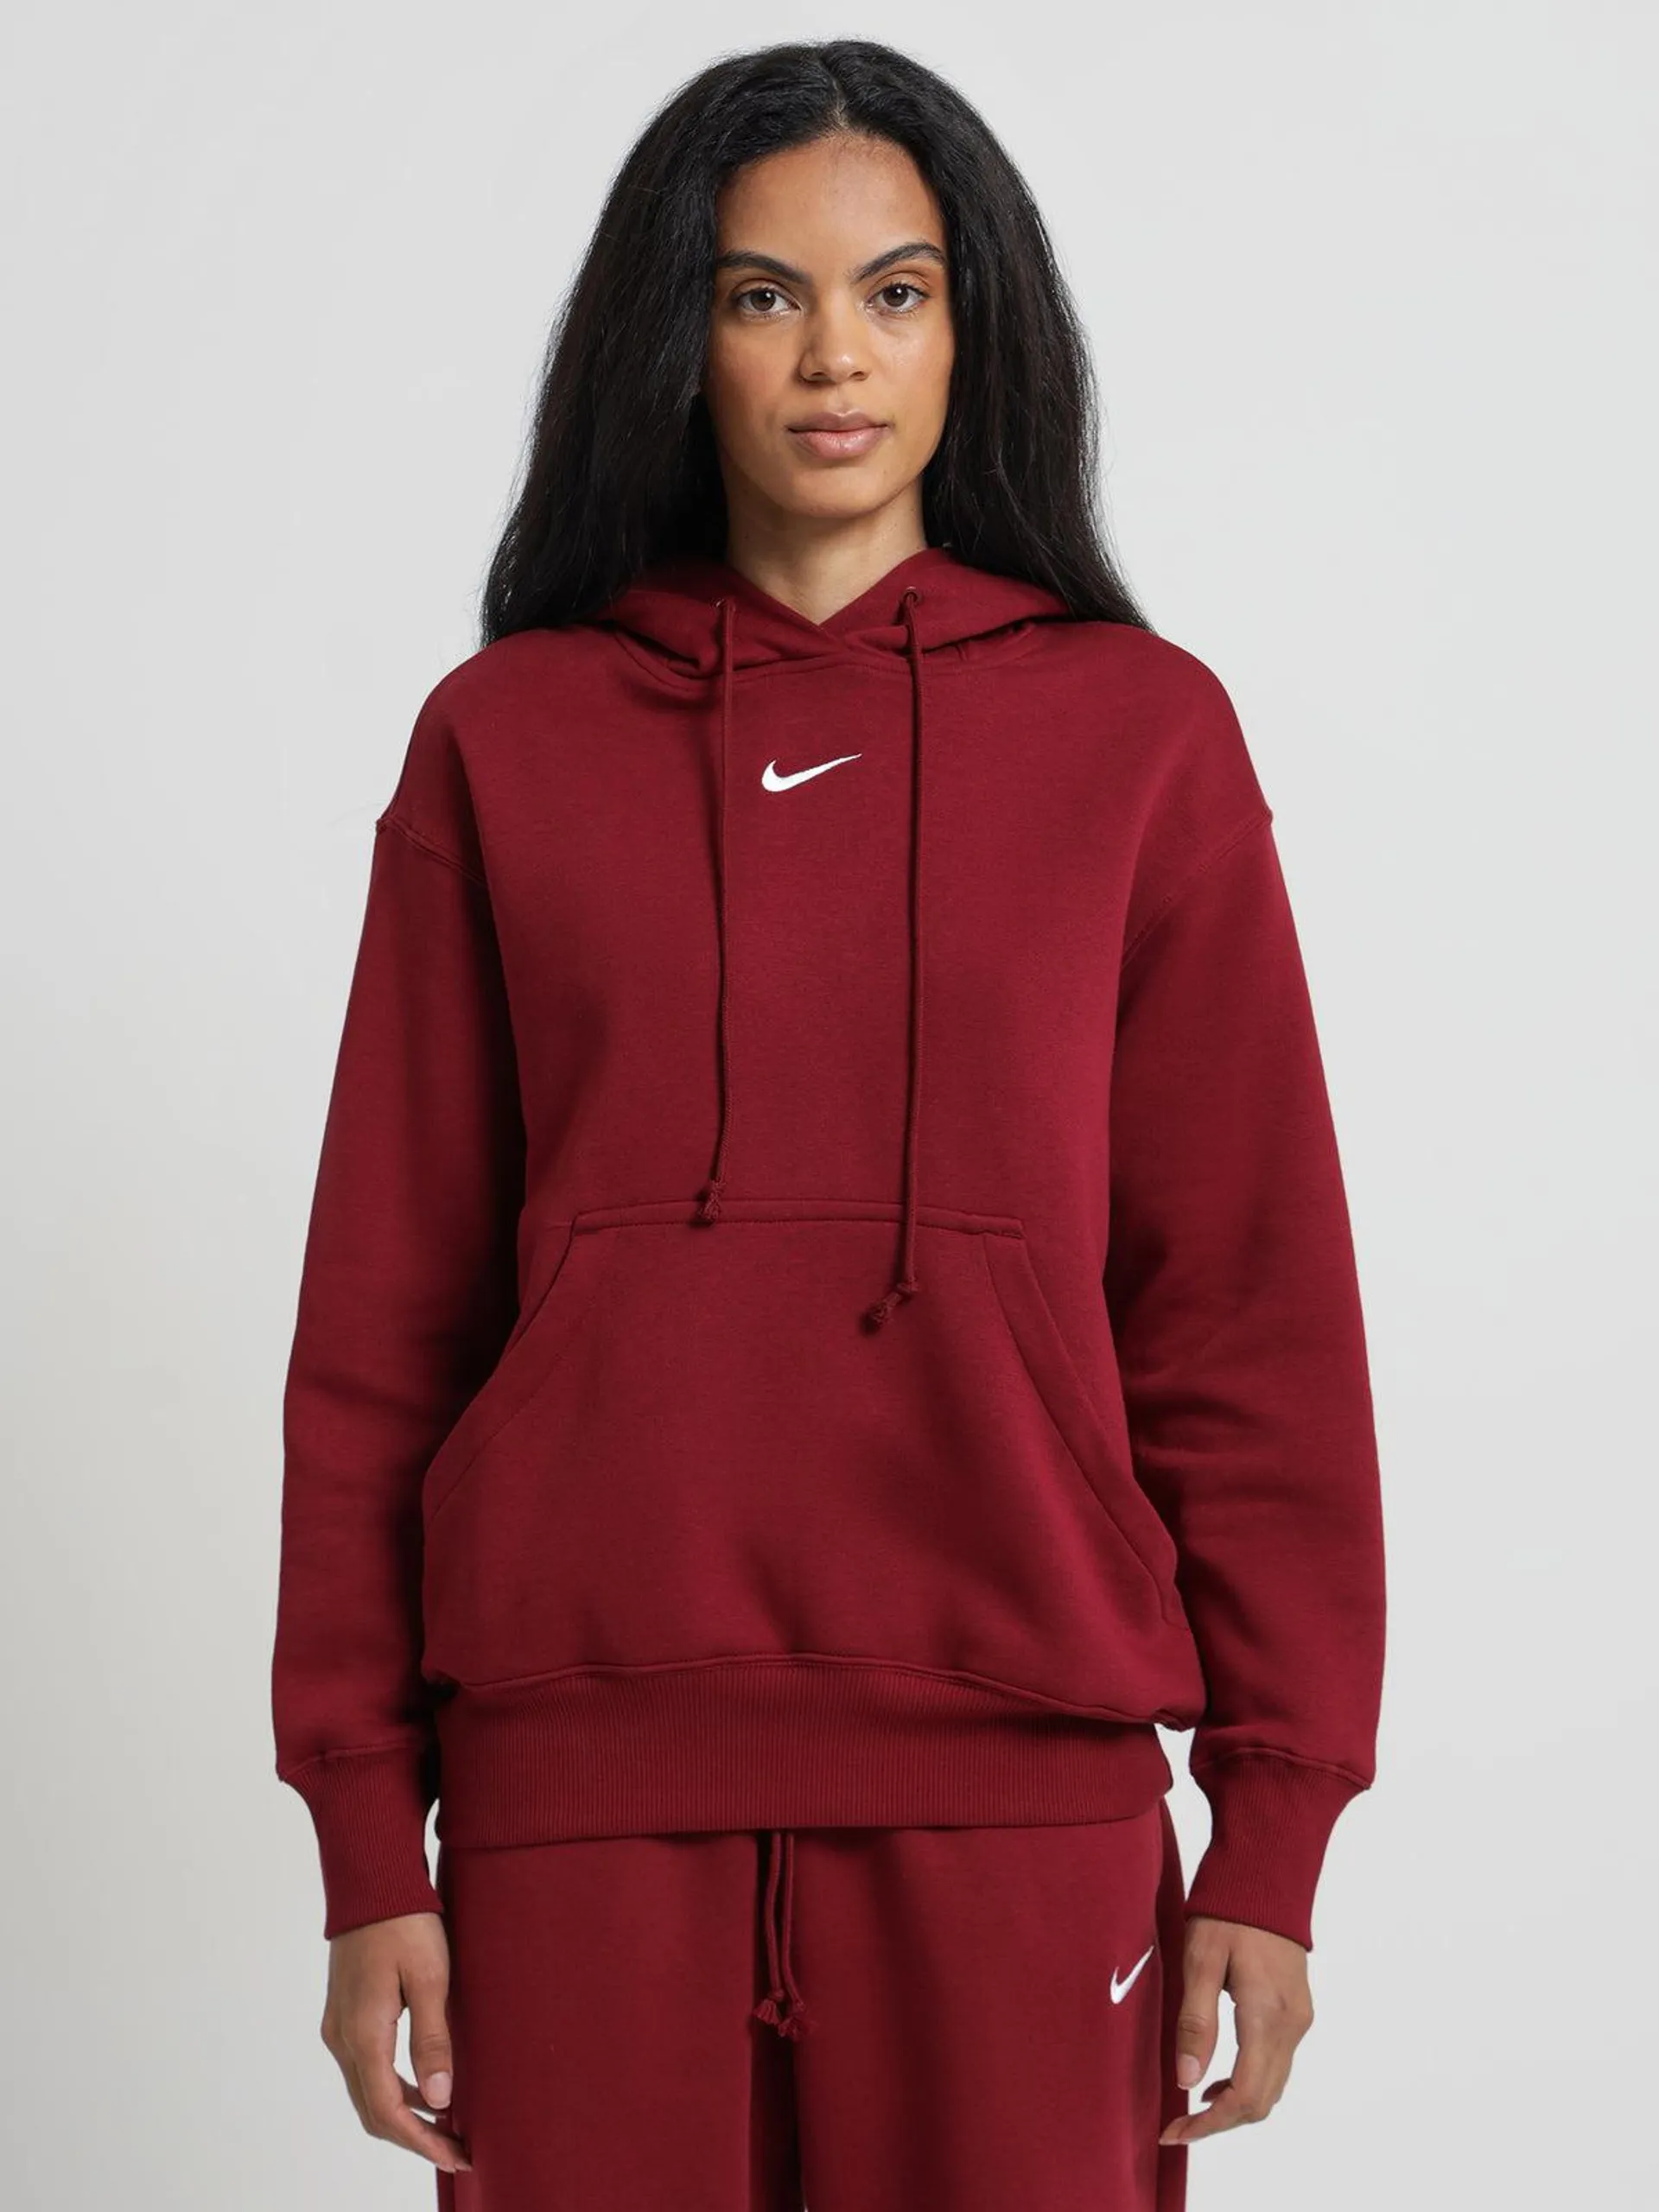 Sportswear Phoenix Fleece Oversized Pullover Hoodie in Team Red & White